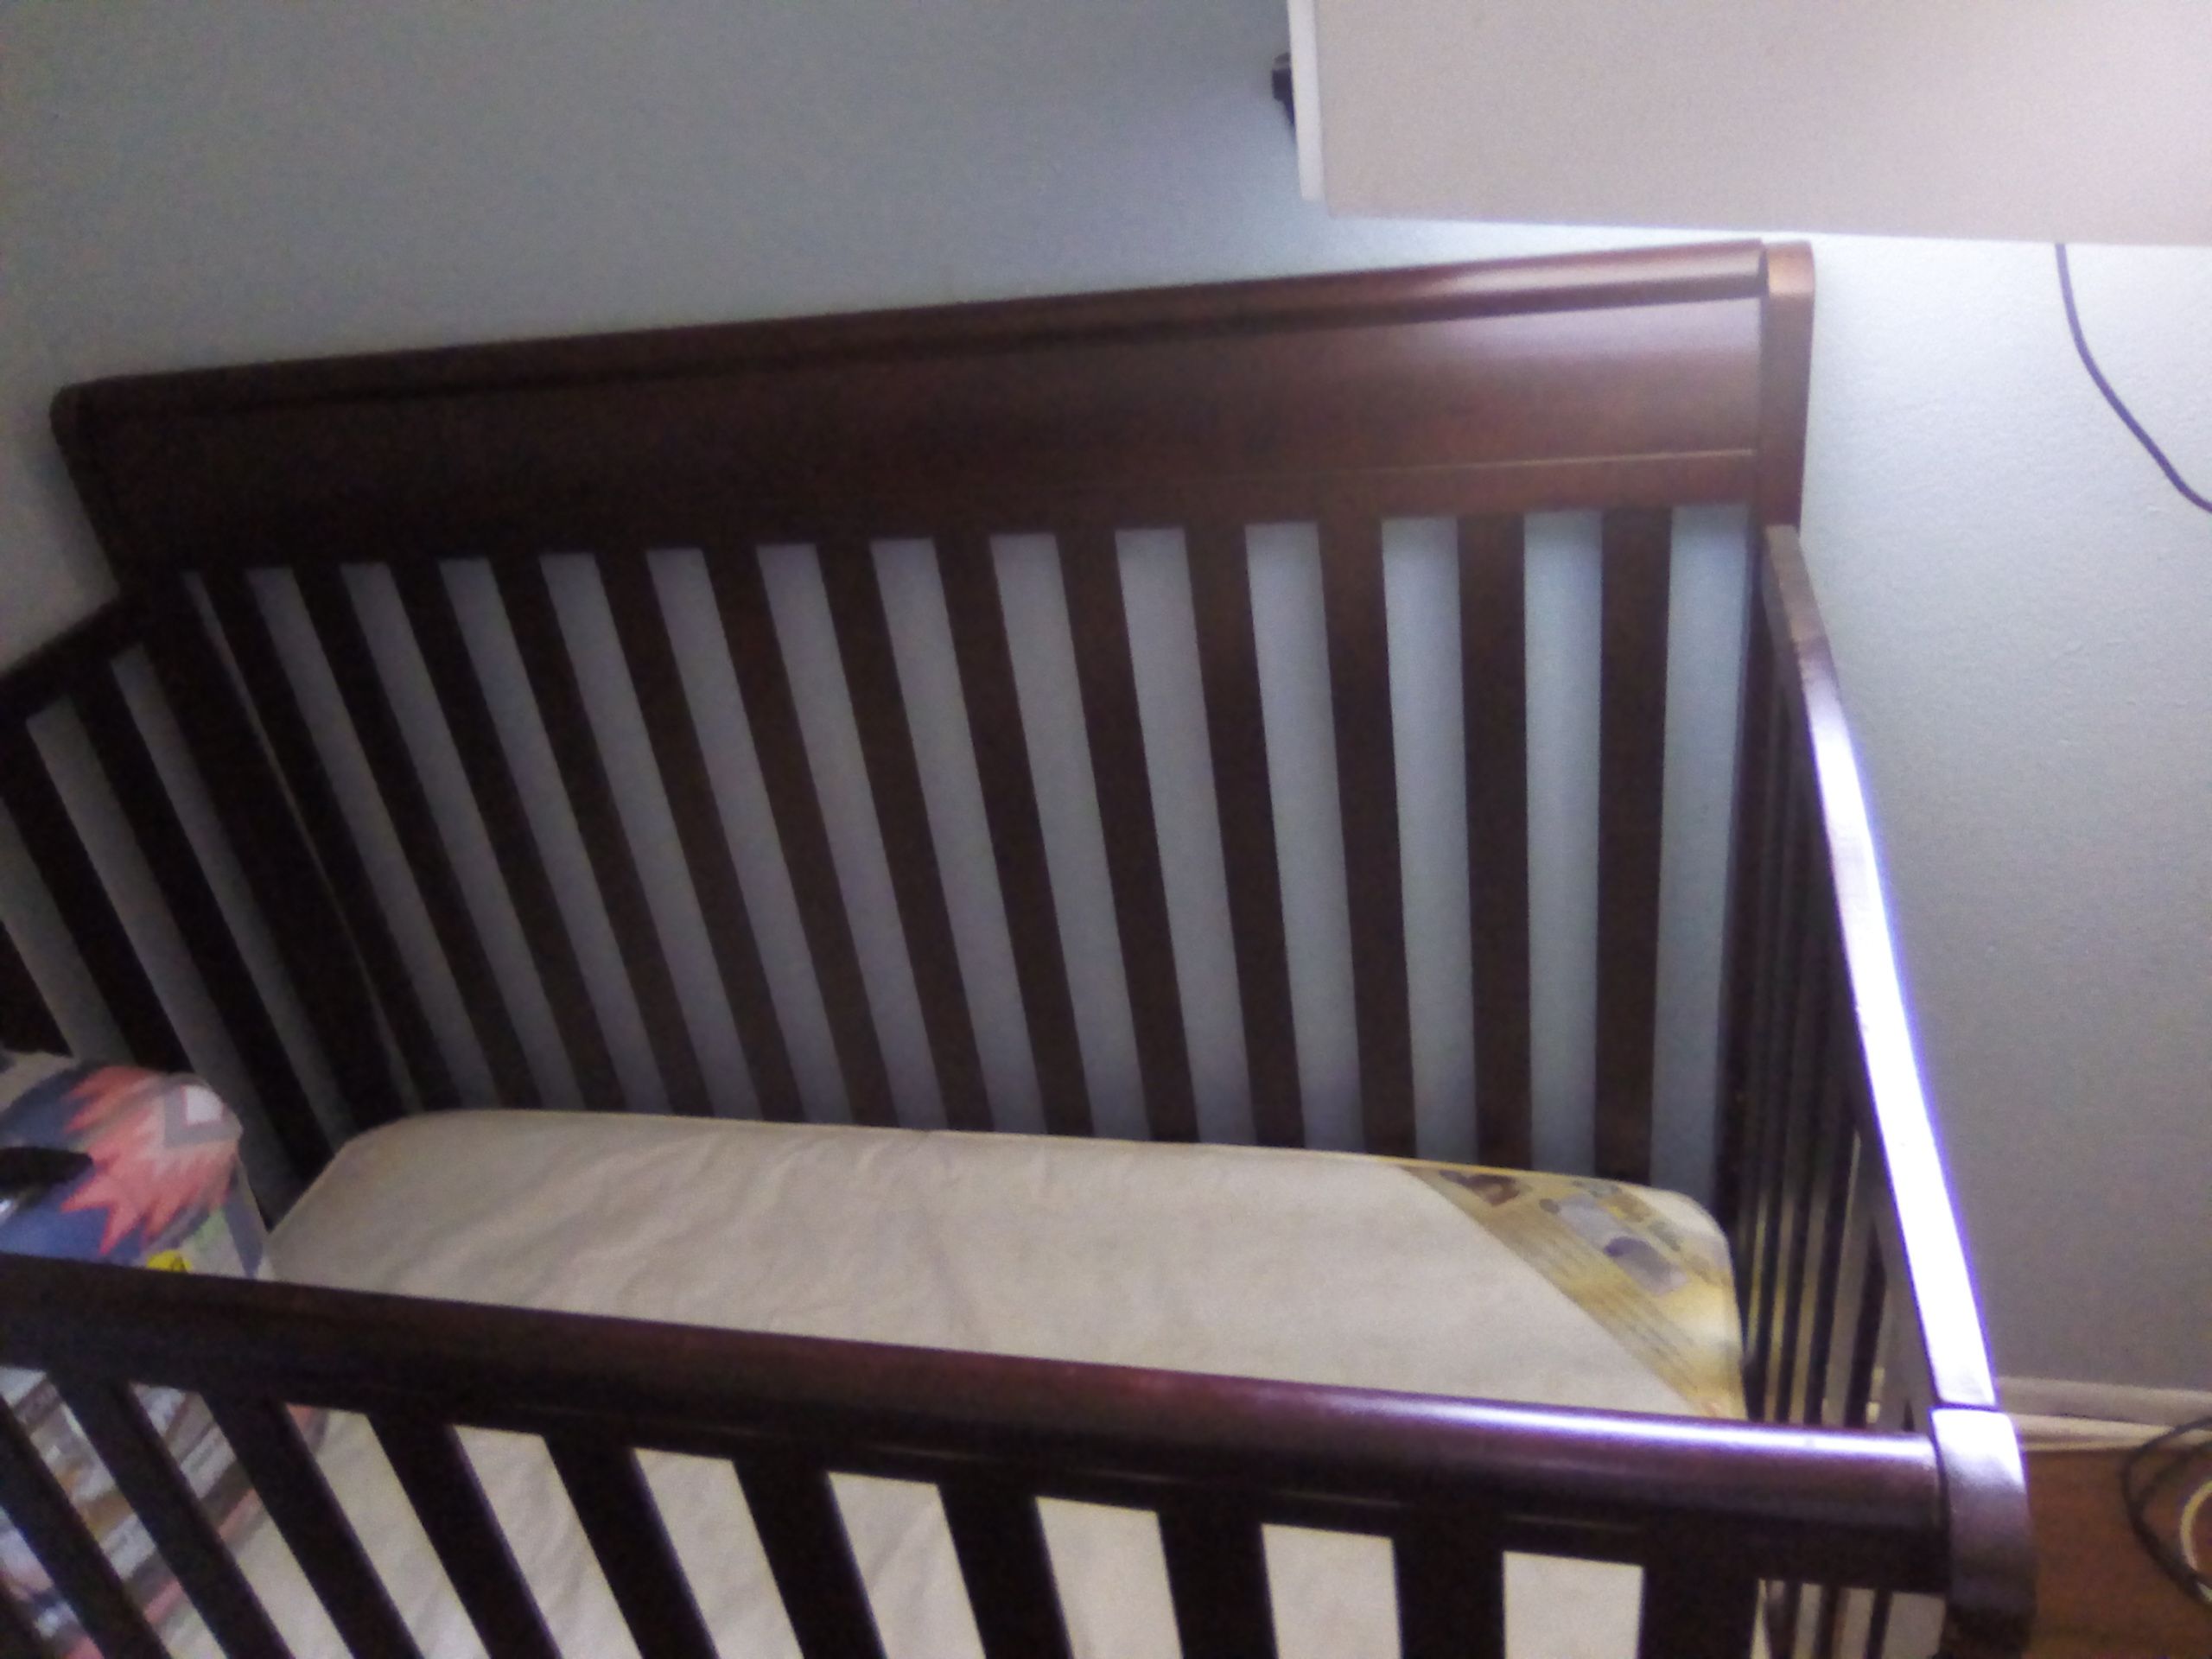 Baby cribs